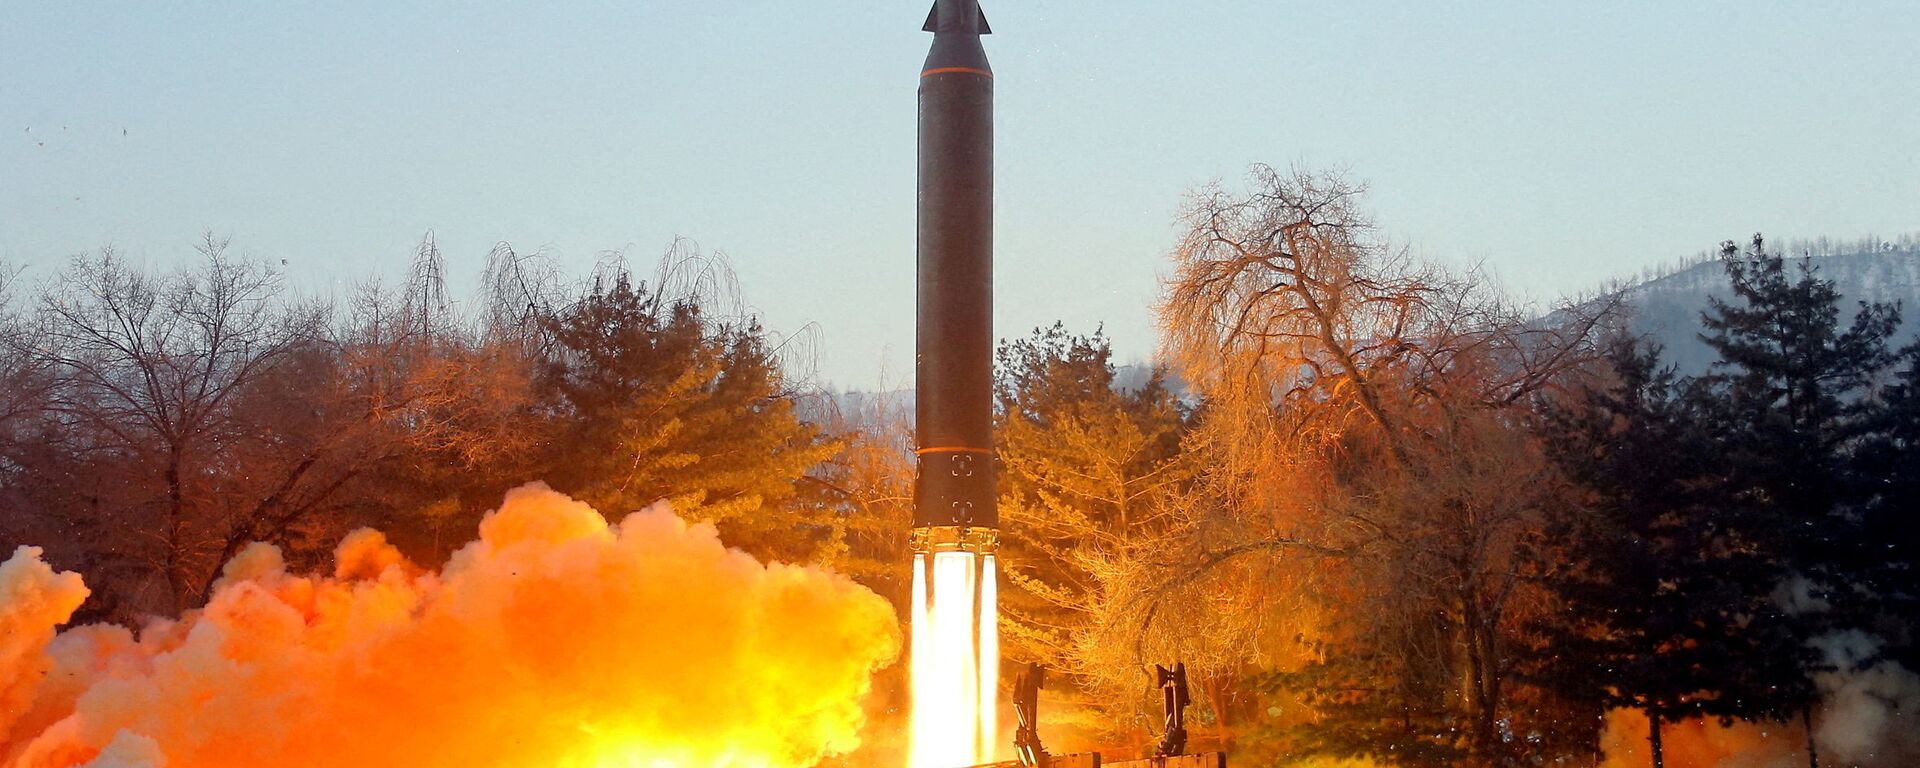 اختبار إطلاق صاروخ تفوق سرعته سرعة الصوت في كوريا الشمالية، 11 يناير 2022  - سبوتنيك عربي, 1920, 06.02.2022